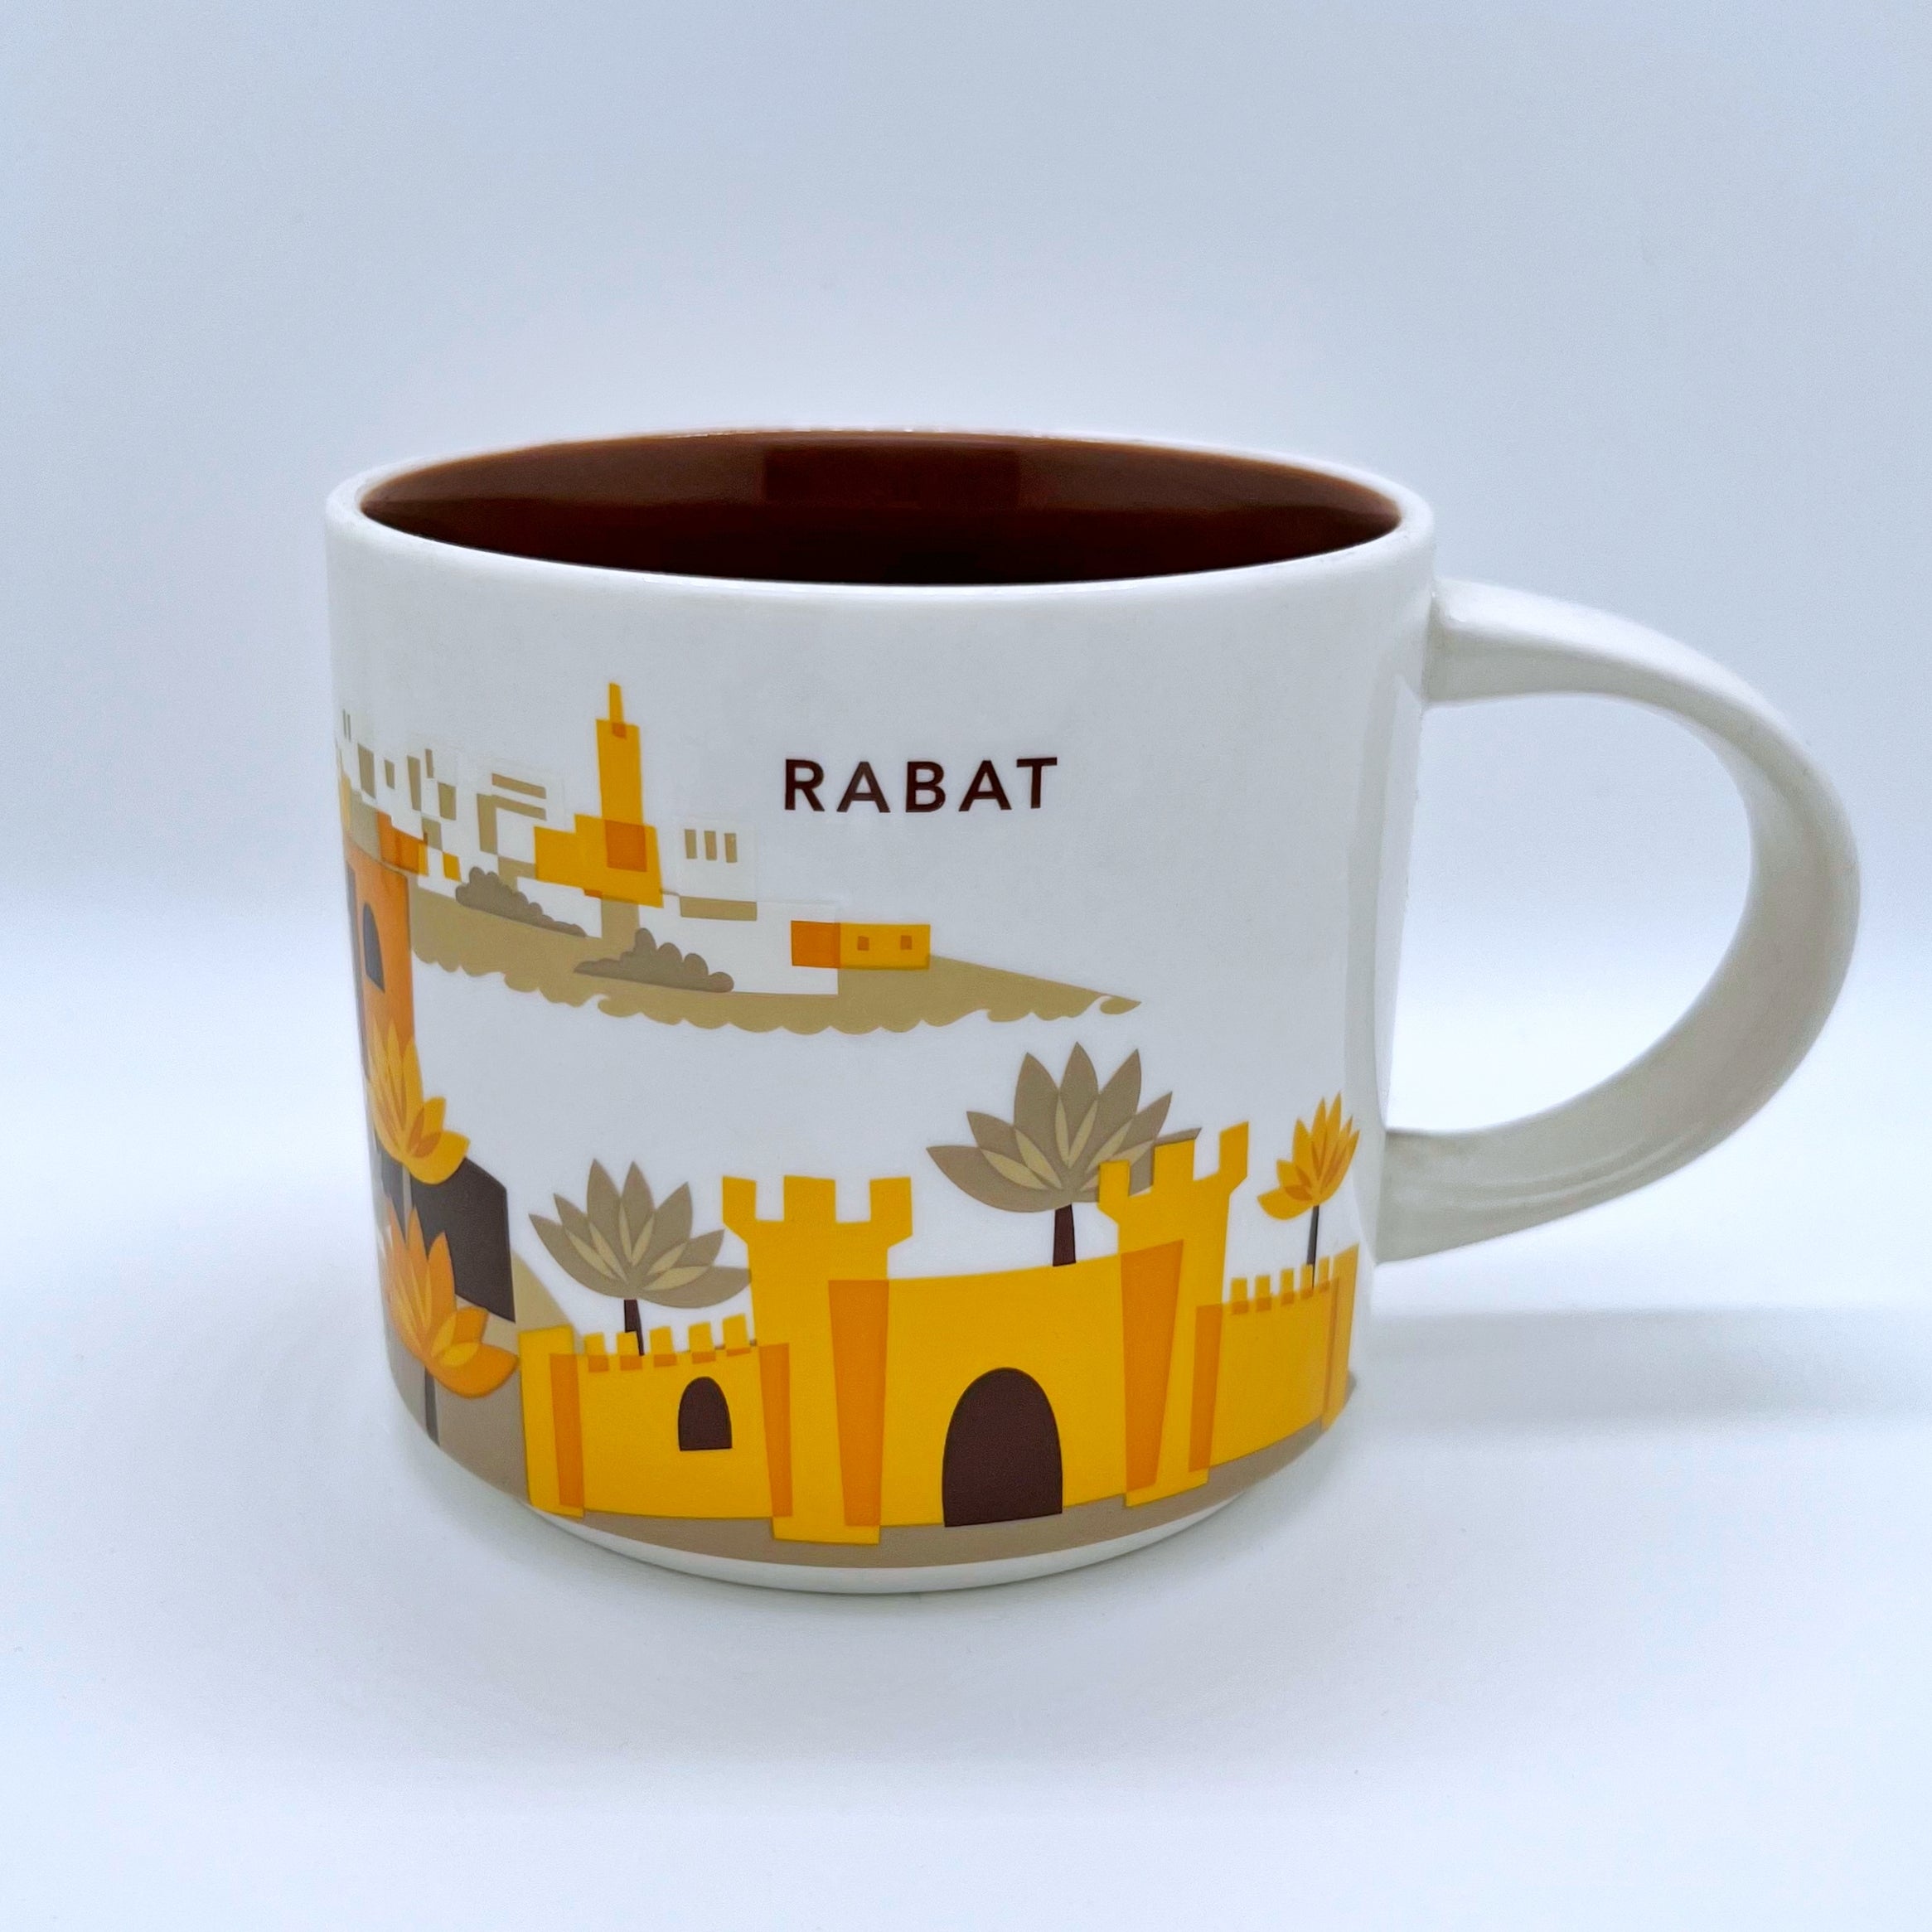 Kaffee Tee und Cappuccino Tasse von Starbucks mit gemalten Bildern aus der Stadt Rabat